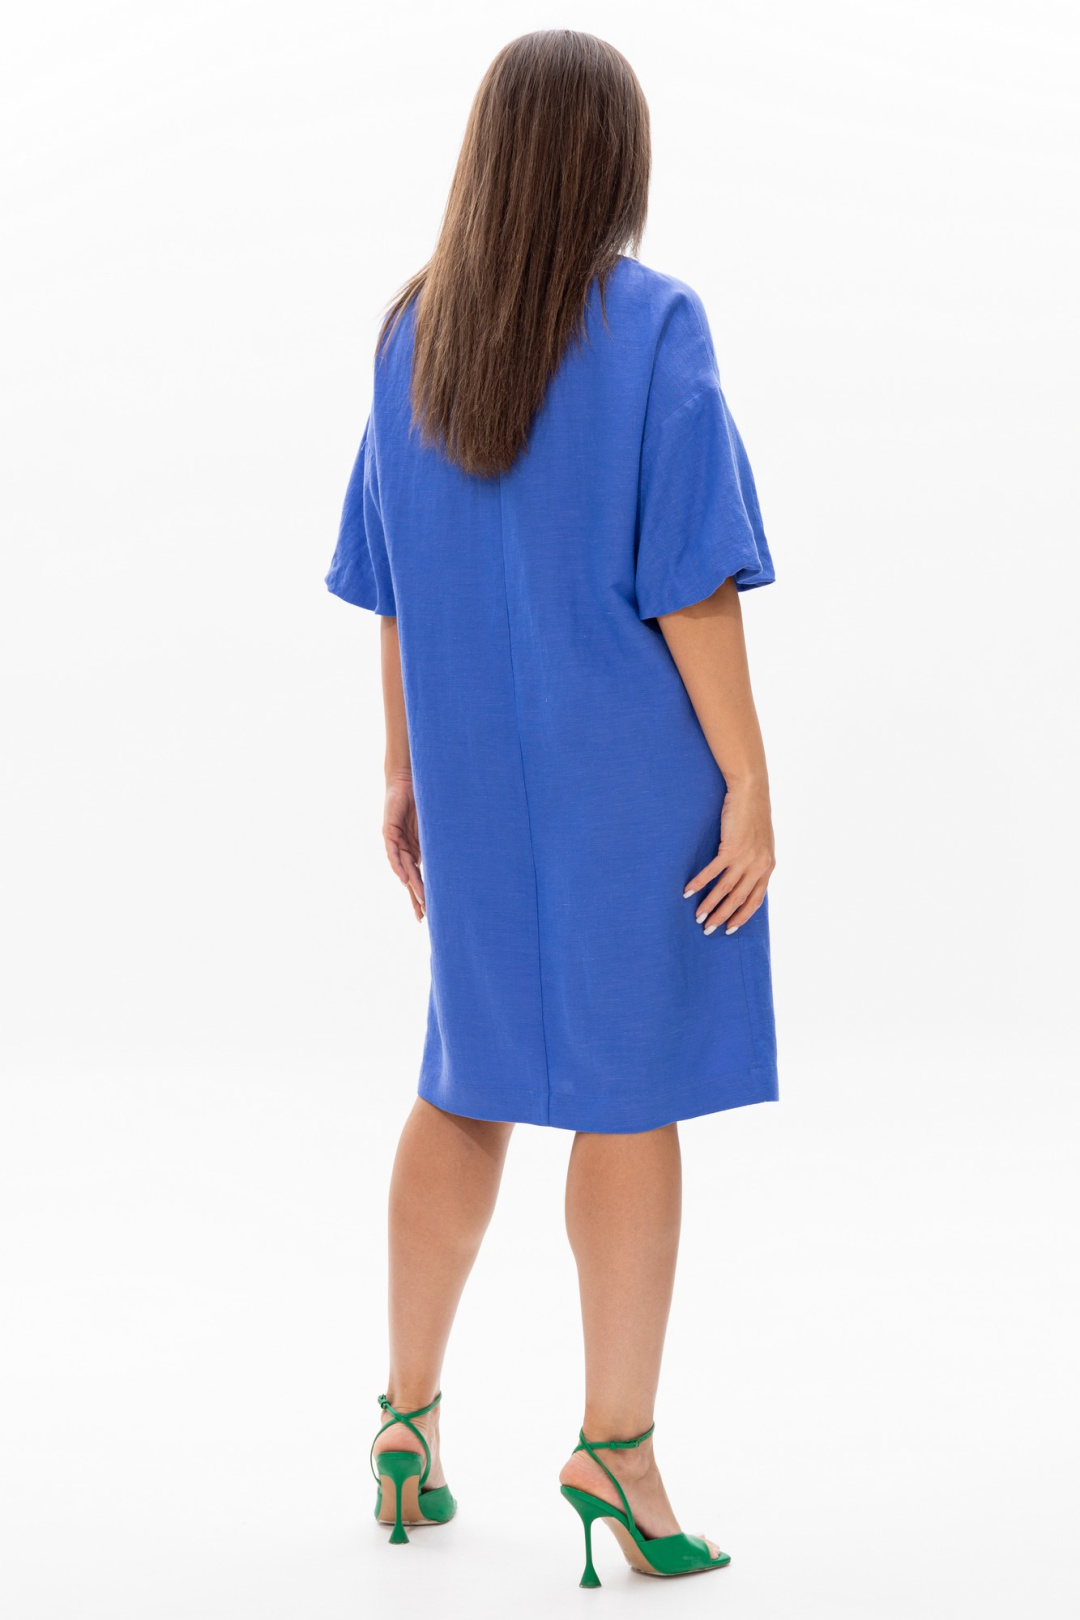 Платье MA CHERIE 4062 сине-фиолетовый